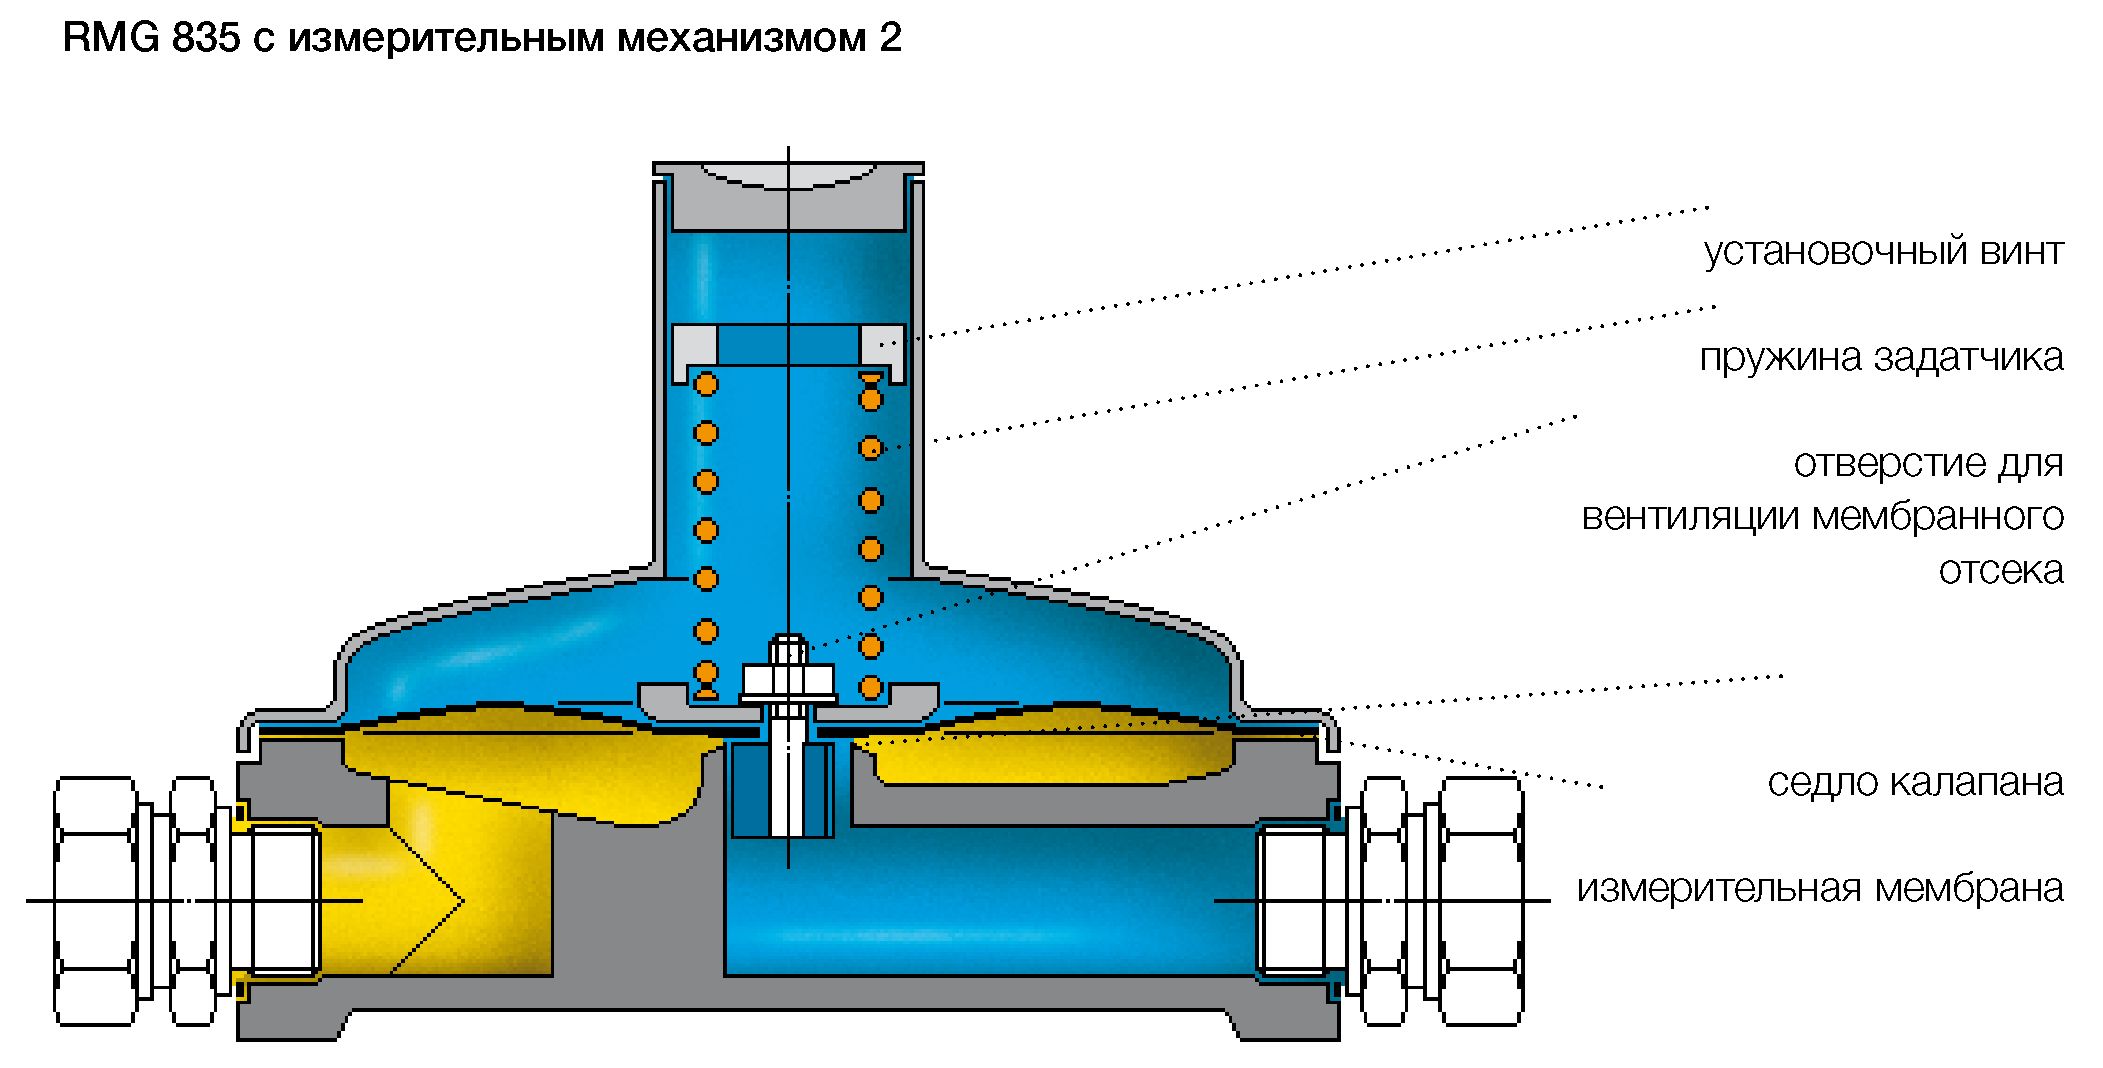 RMG 835 с измерительным механизмом 2